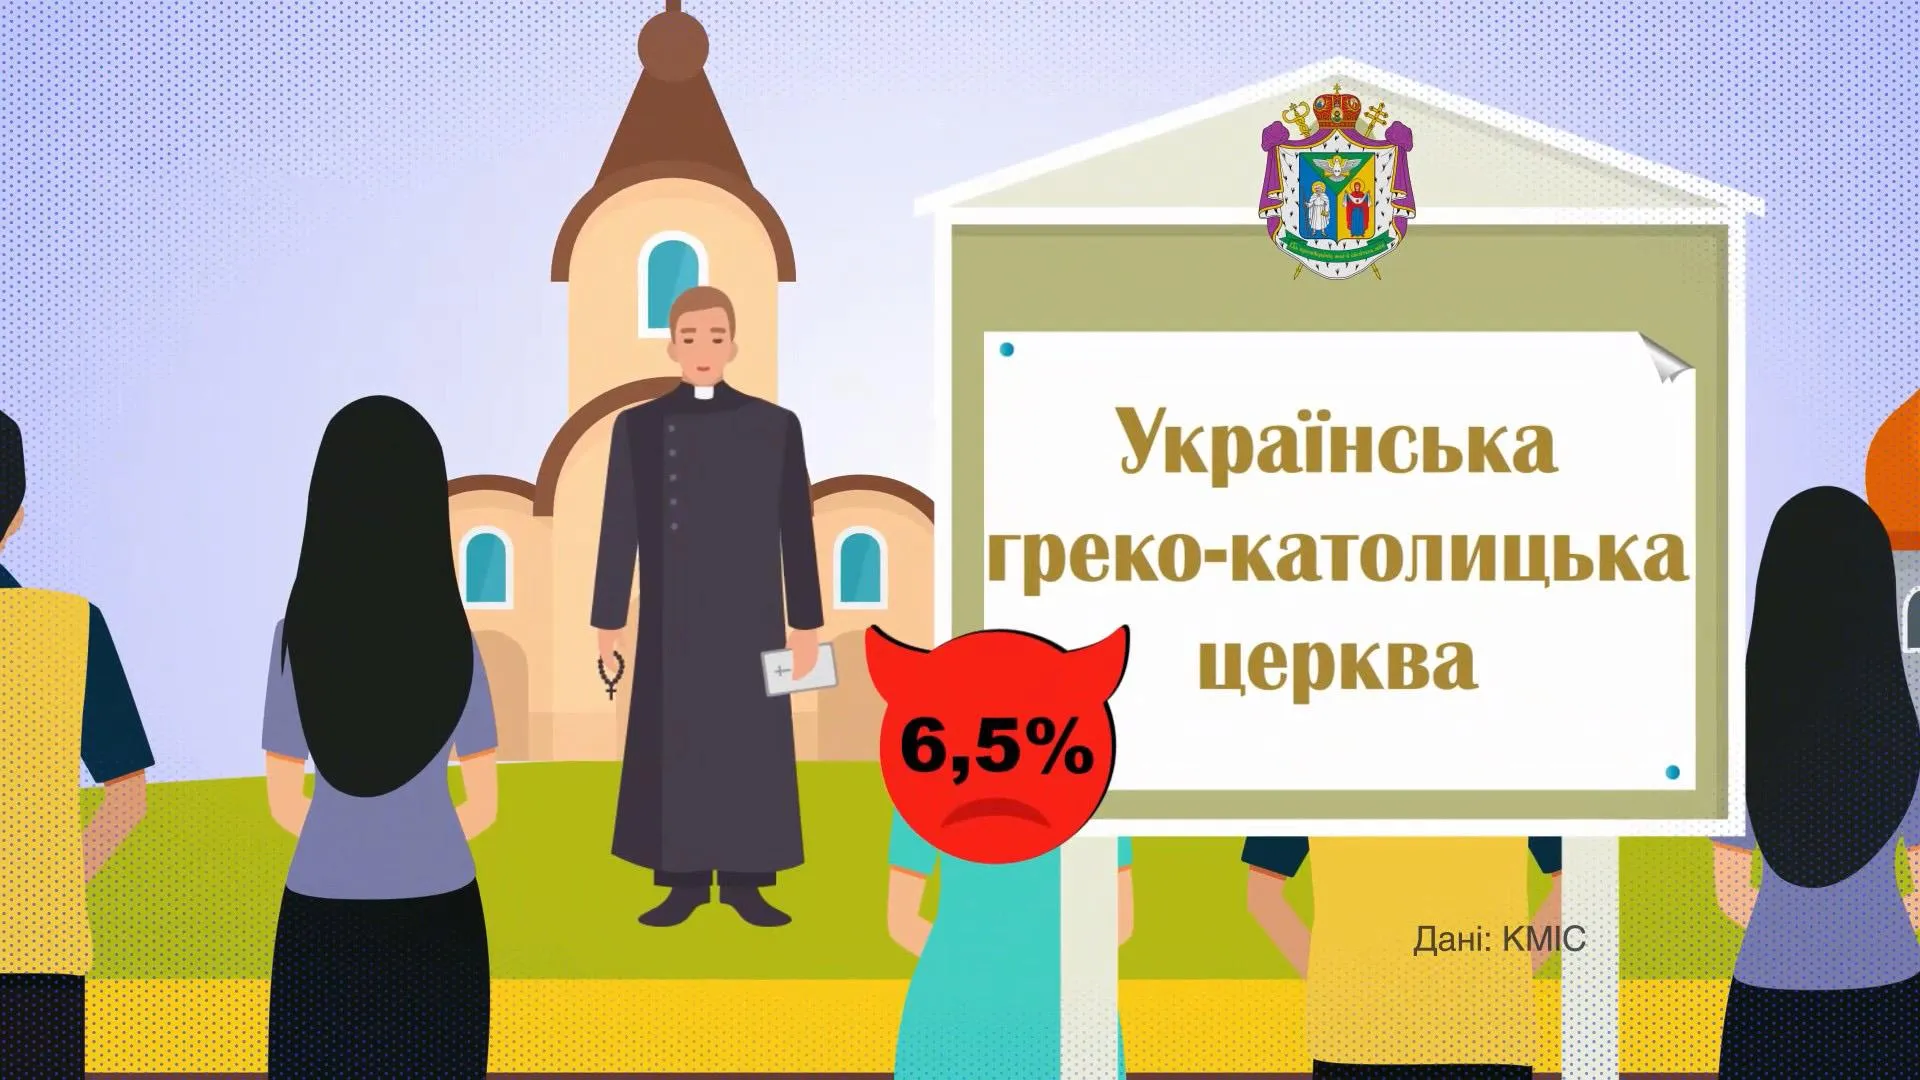 Українська греко-католицька церква